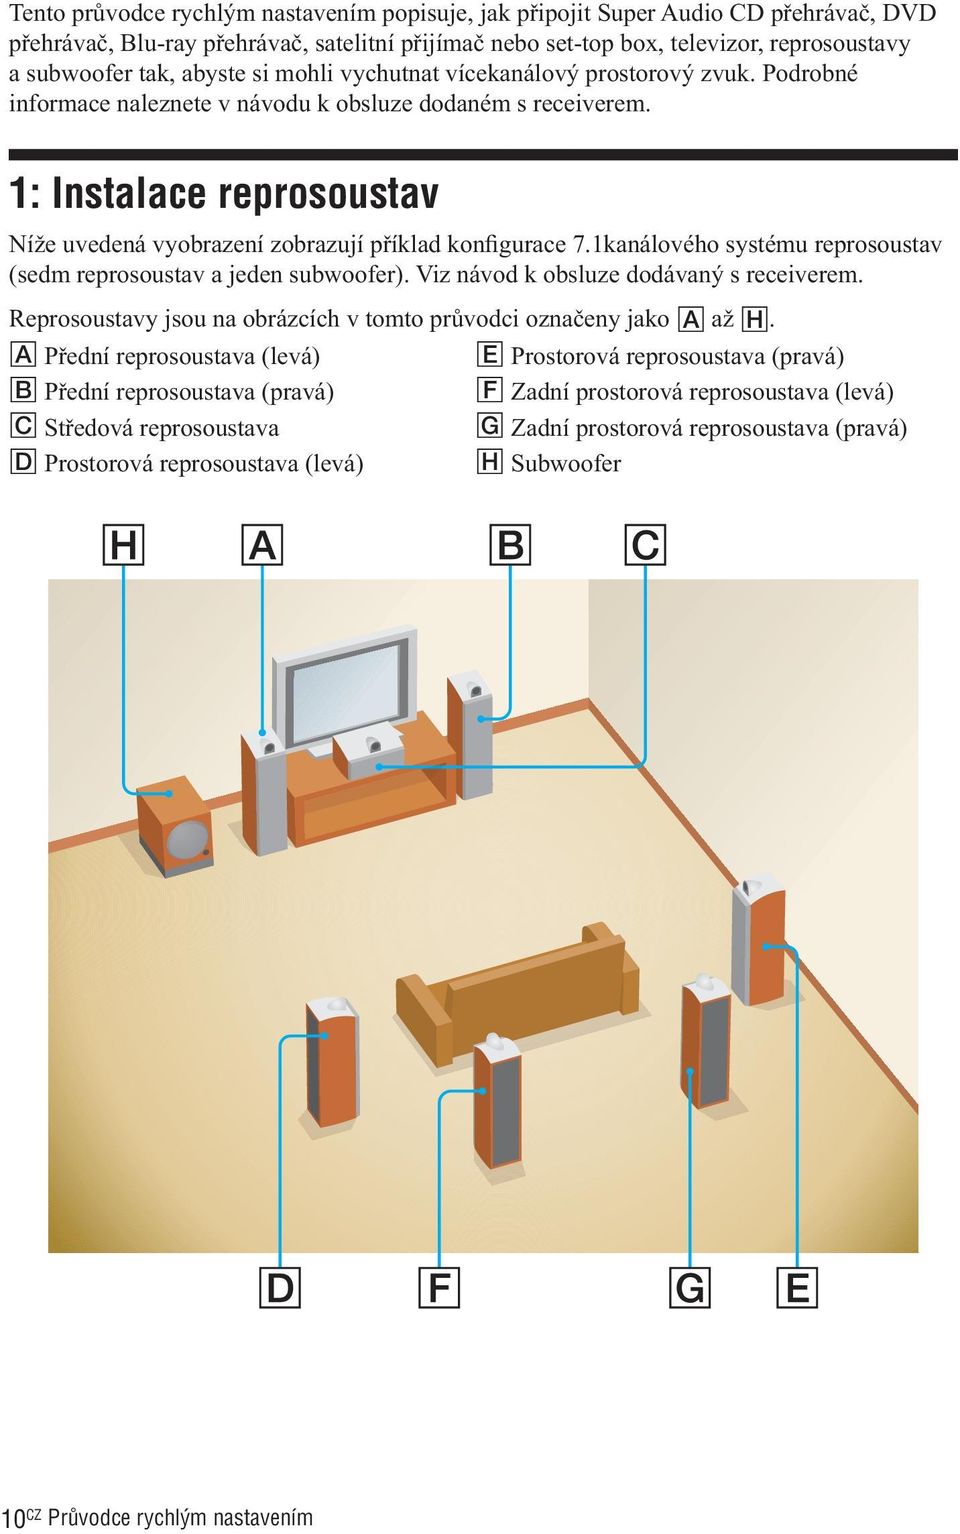 1: Instalace reprosoustav Níže uvedená vyobrazení zobrazují příklad konfigurace 7.1kanálového systému reprosoustav (sedm reprosoustav a jeden subwoofer). Viz návod k obsluze dodávaný s receiverem.